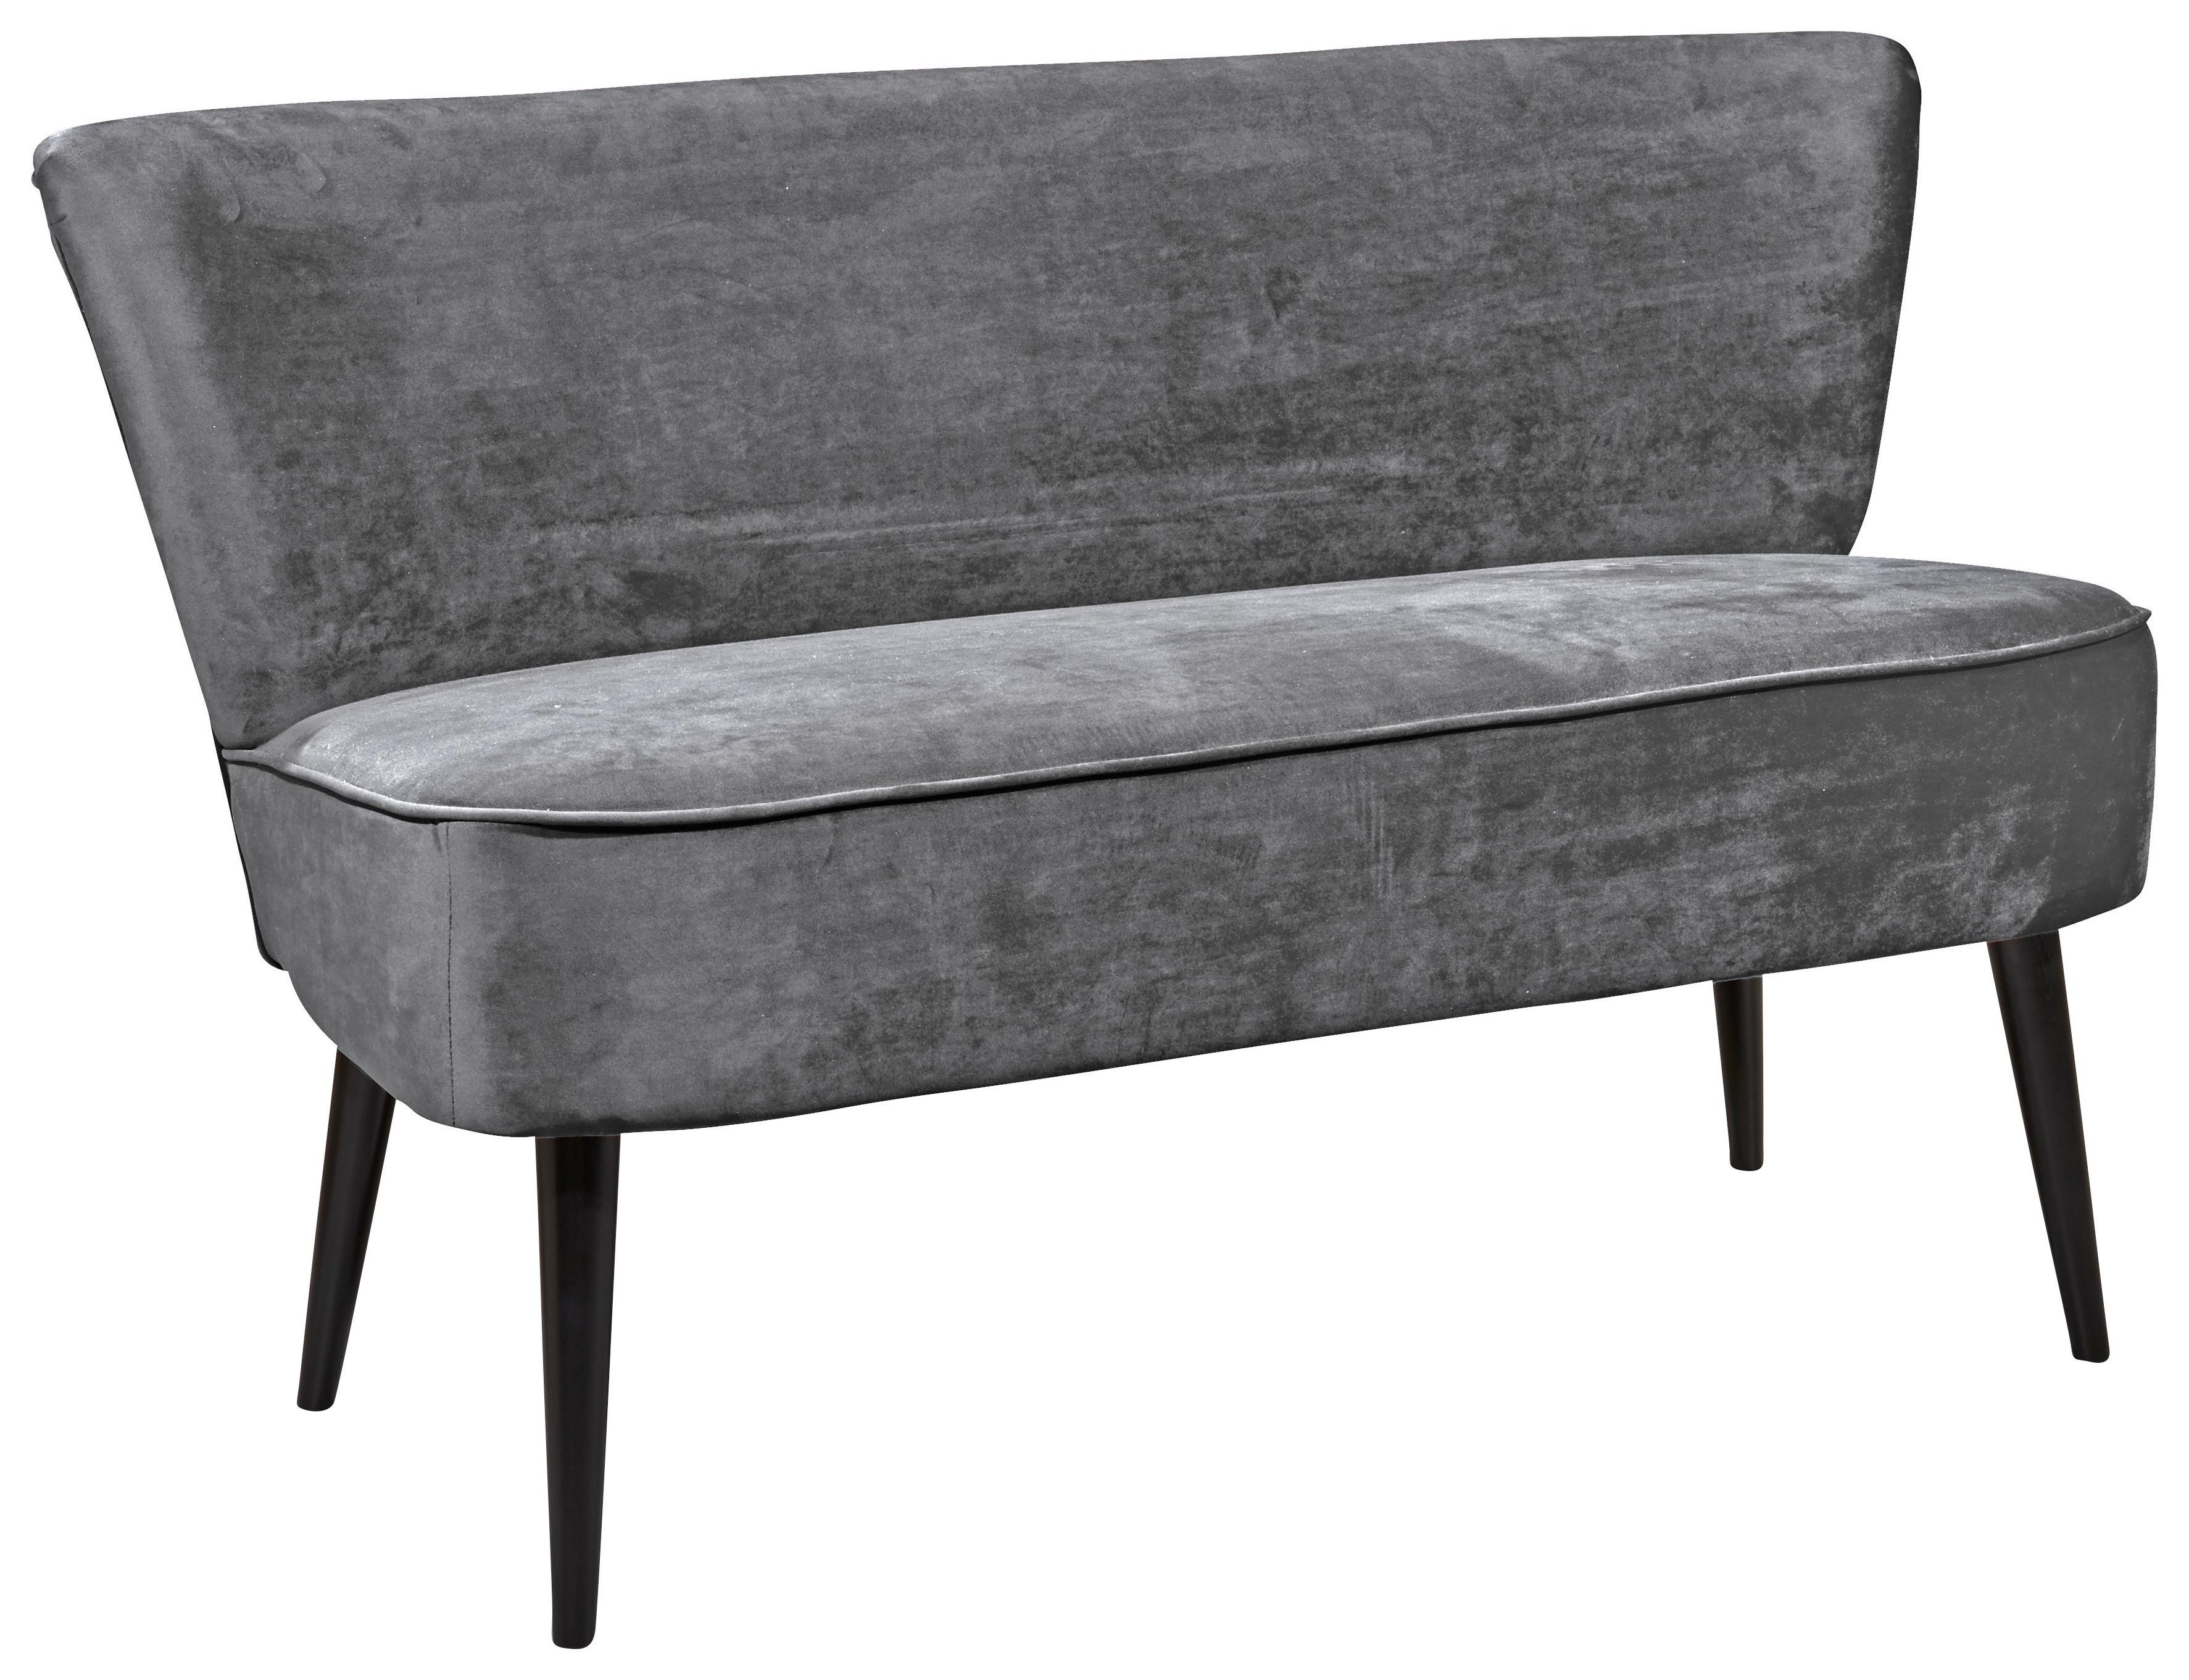 Sitzbank mit Lehne Gepolstert Samt Grau Lord B: 179 cm - Schwarz/Grau, Trend, Holzwerkstoff/Textil (179/83/75cm) - MID.YOU